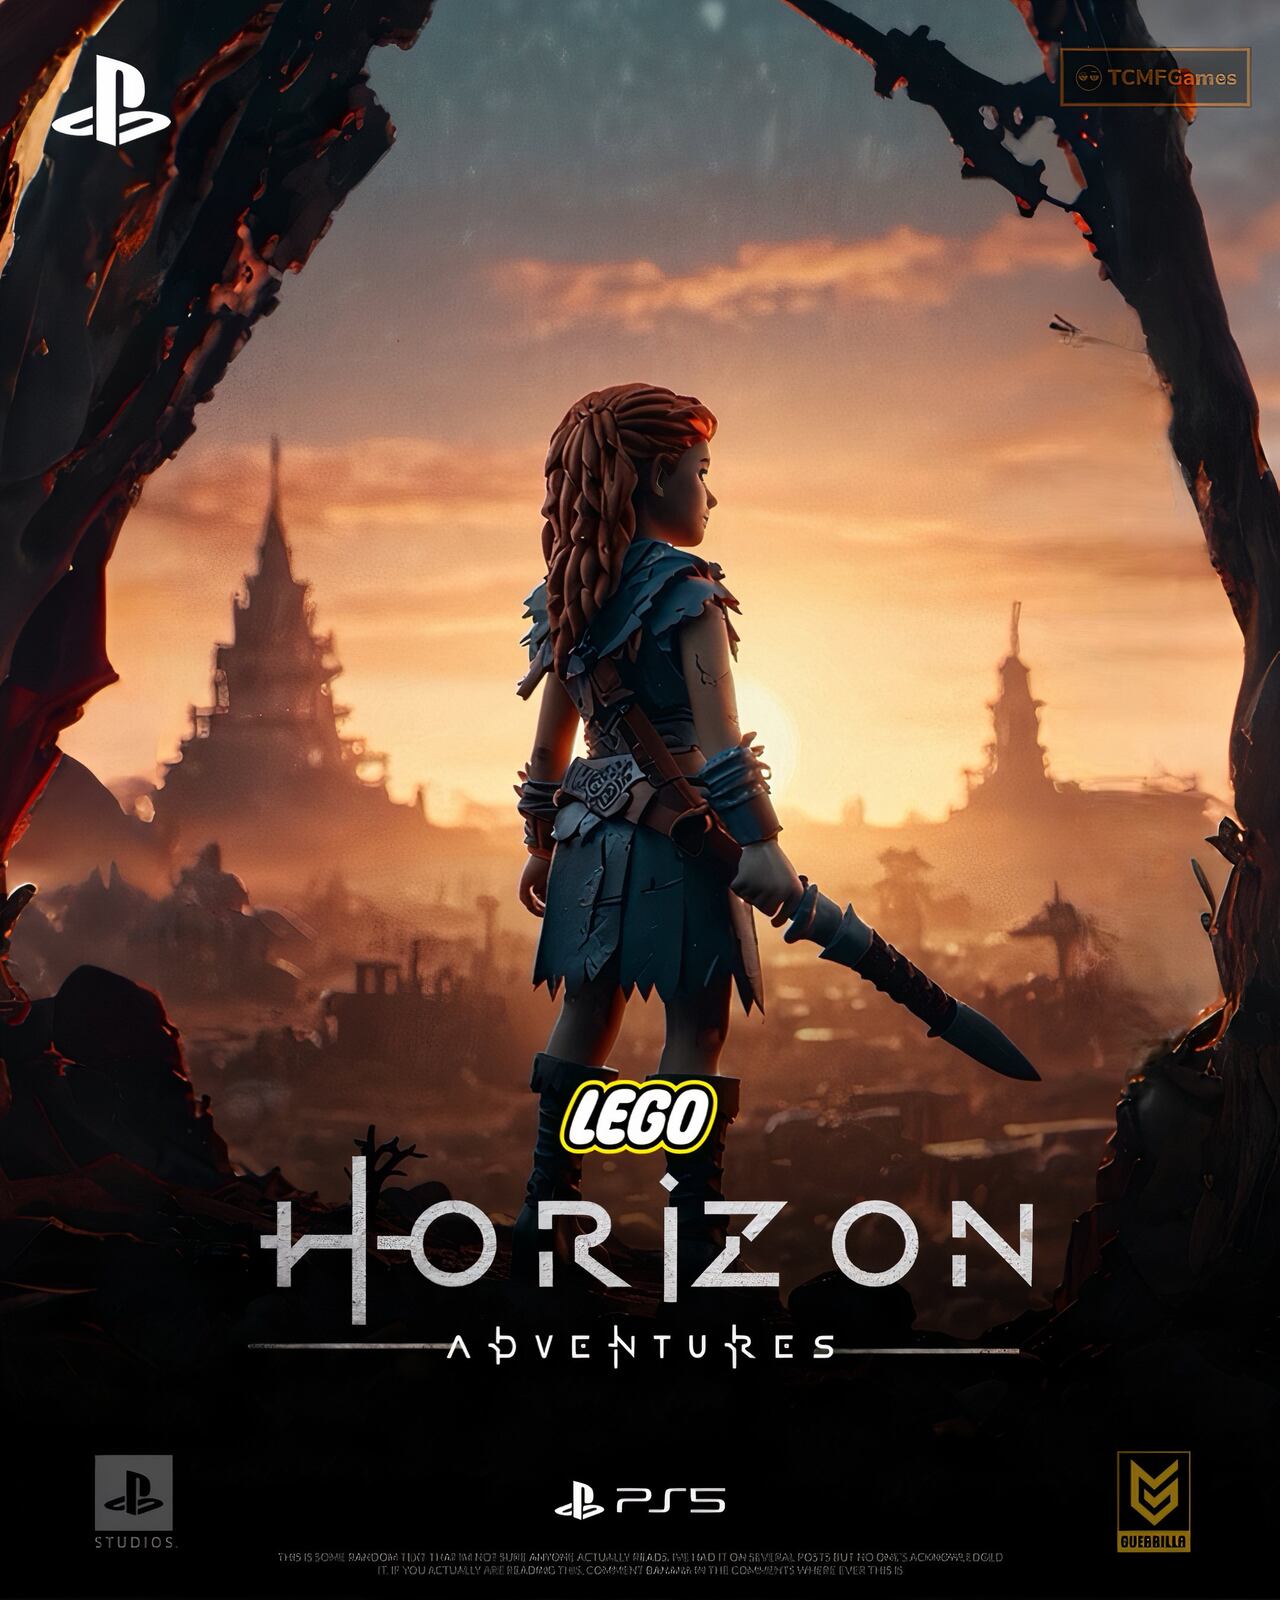 En los círculos de los videojuegos, se murmura sobre una posible colaboración entre Sony y Lego que podría dar un giro inesperado al lanzamiento de 'Lego Horizon Adventures' para PlayStation.